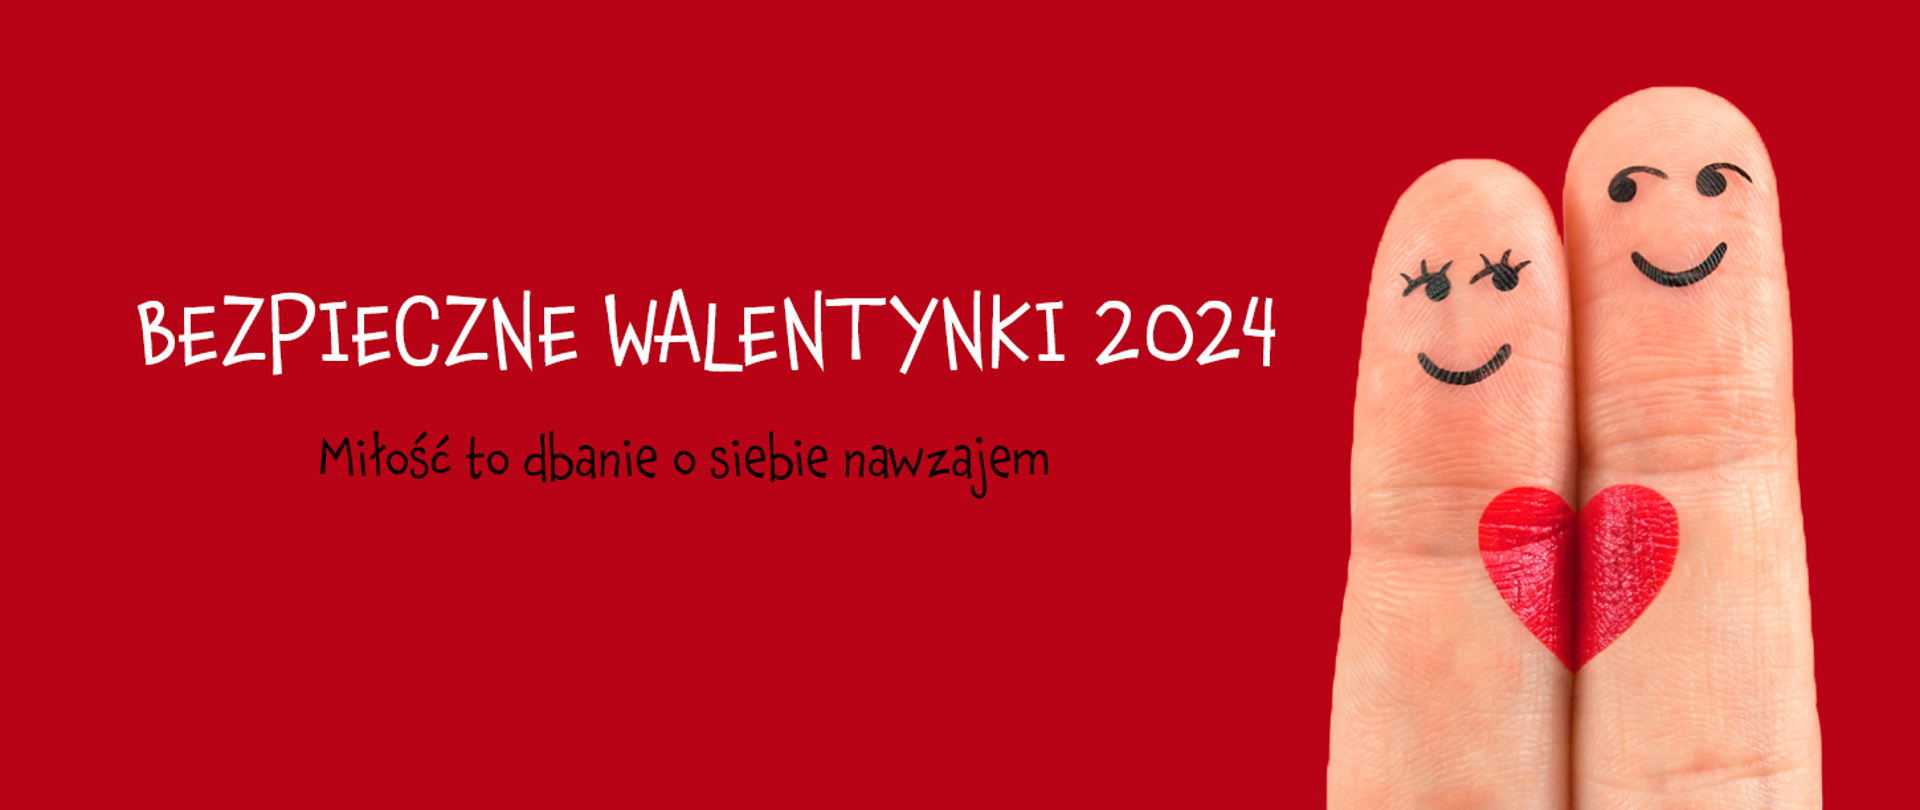 baner o tytule Bezpieczne walentynki 2024, na czerwonym tle dwa palce stylizowane na parę zakochanych